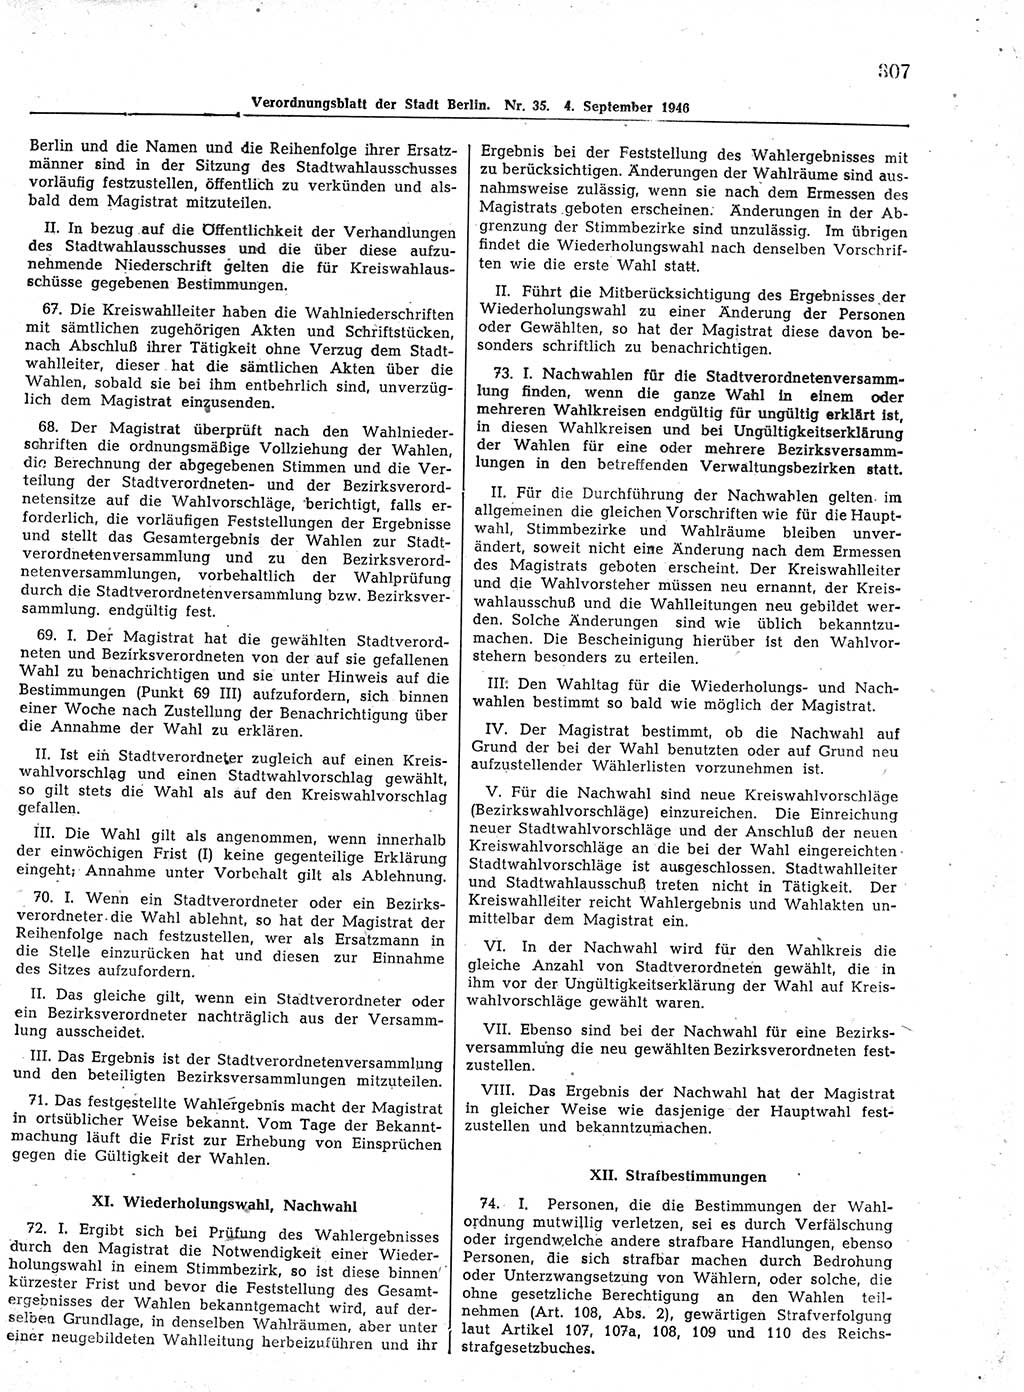 Verordnungsblatt (VOBl.) der Stadt Berlin, für Groß-Berlin 1946, Seite 307 (VOBl. Bln. 1946, S. 307)